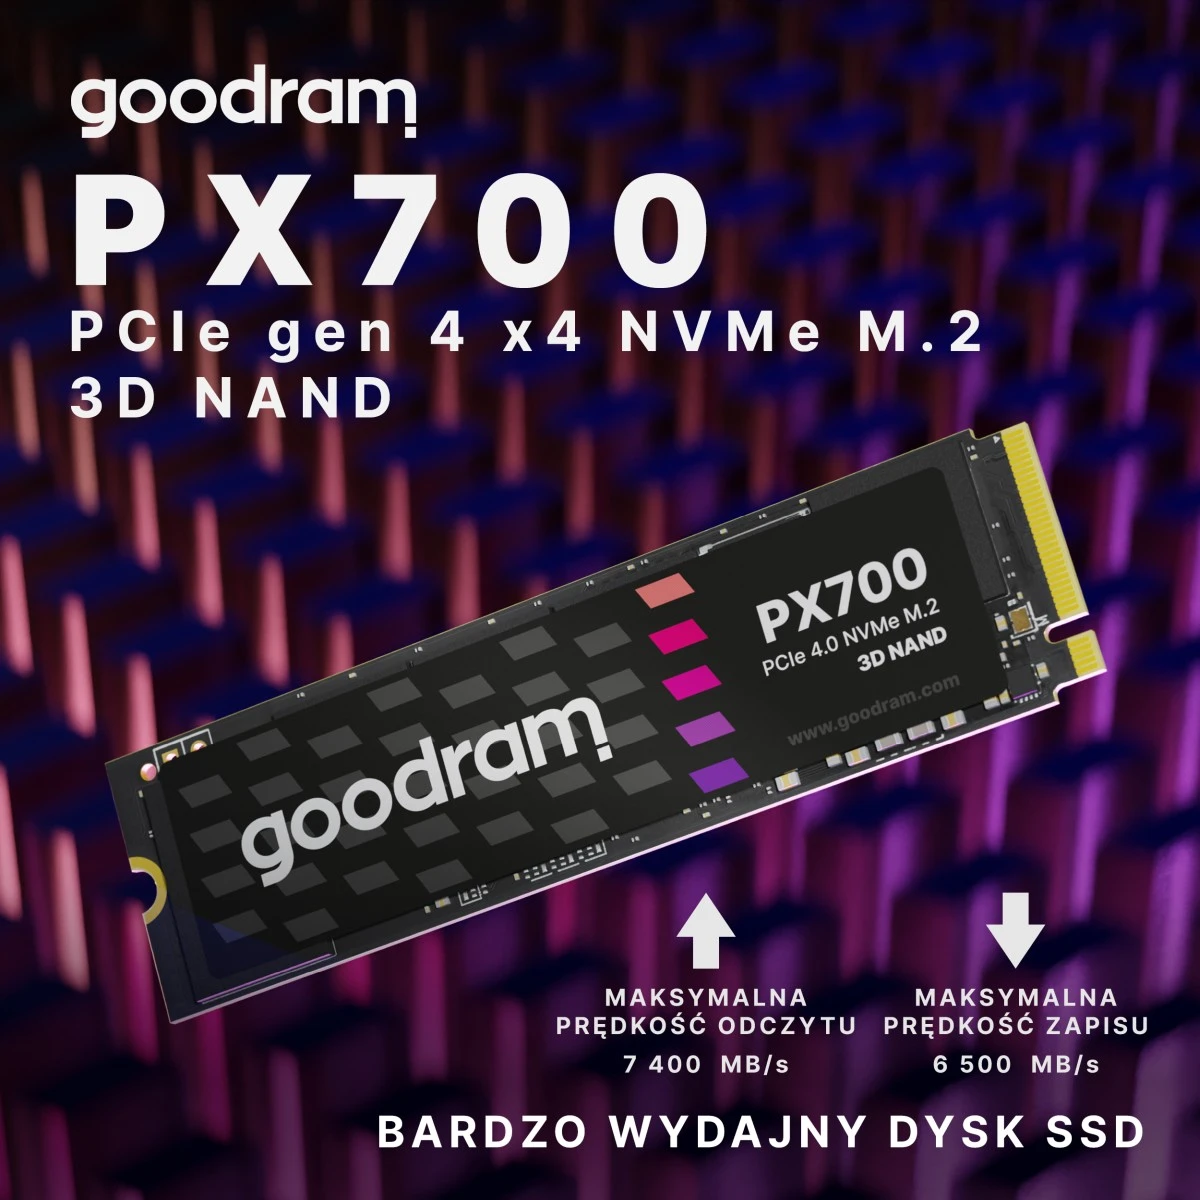 goodram px700